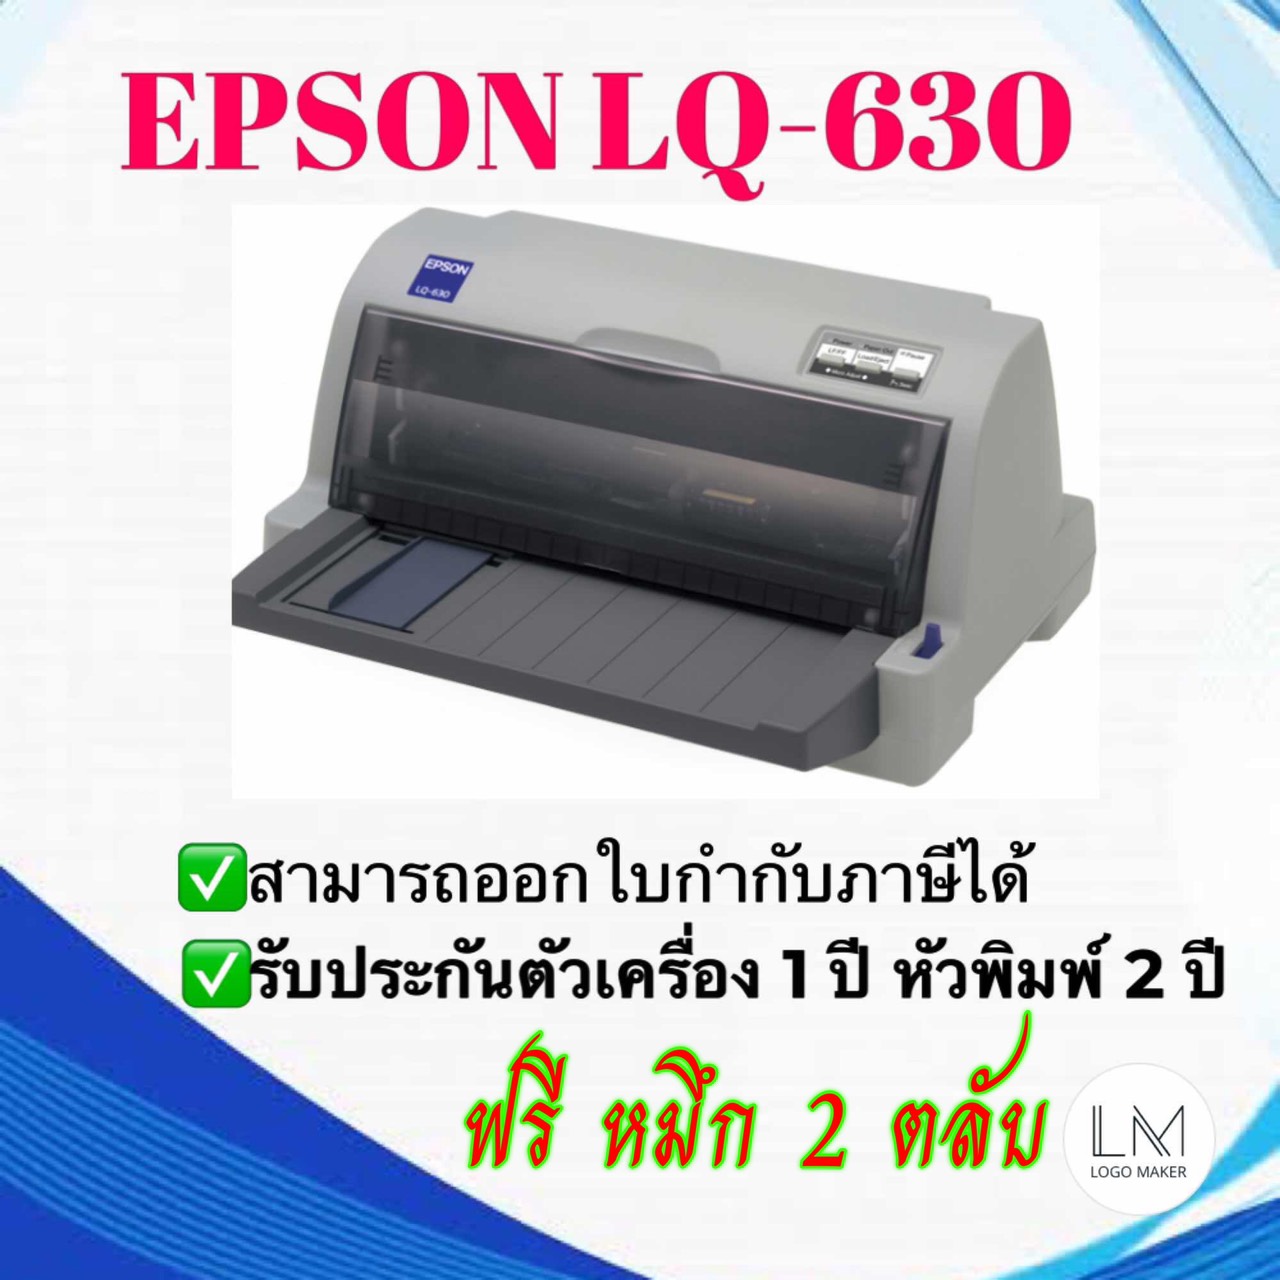 EPSON Dot Matrix Printer LQ-630